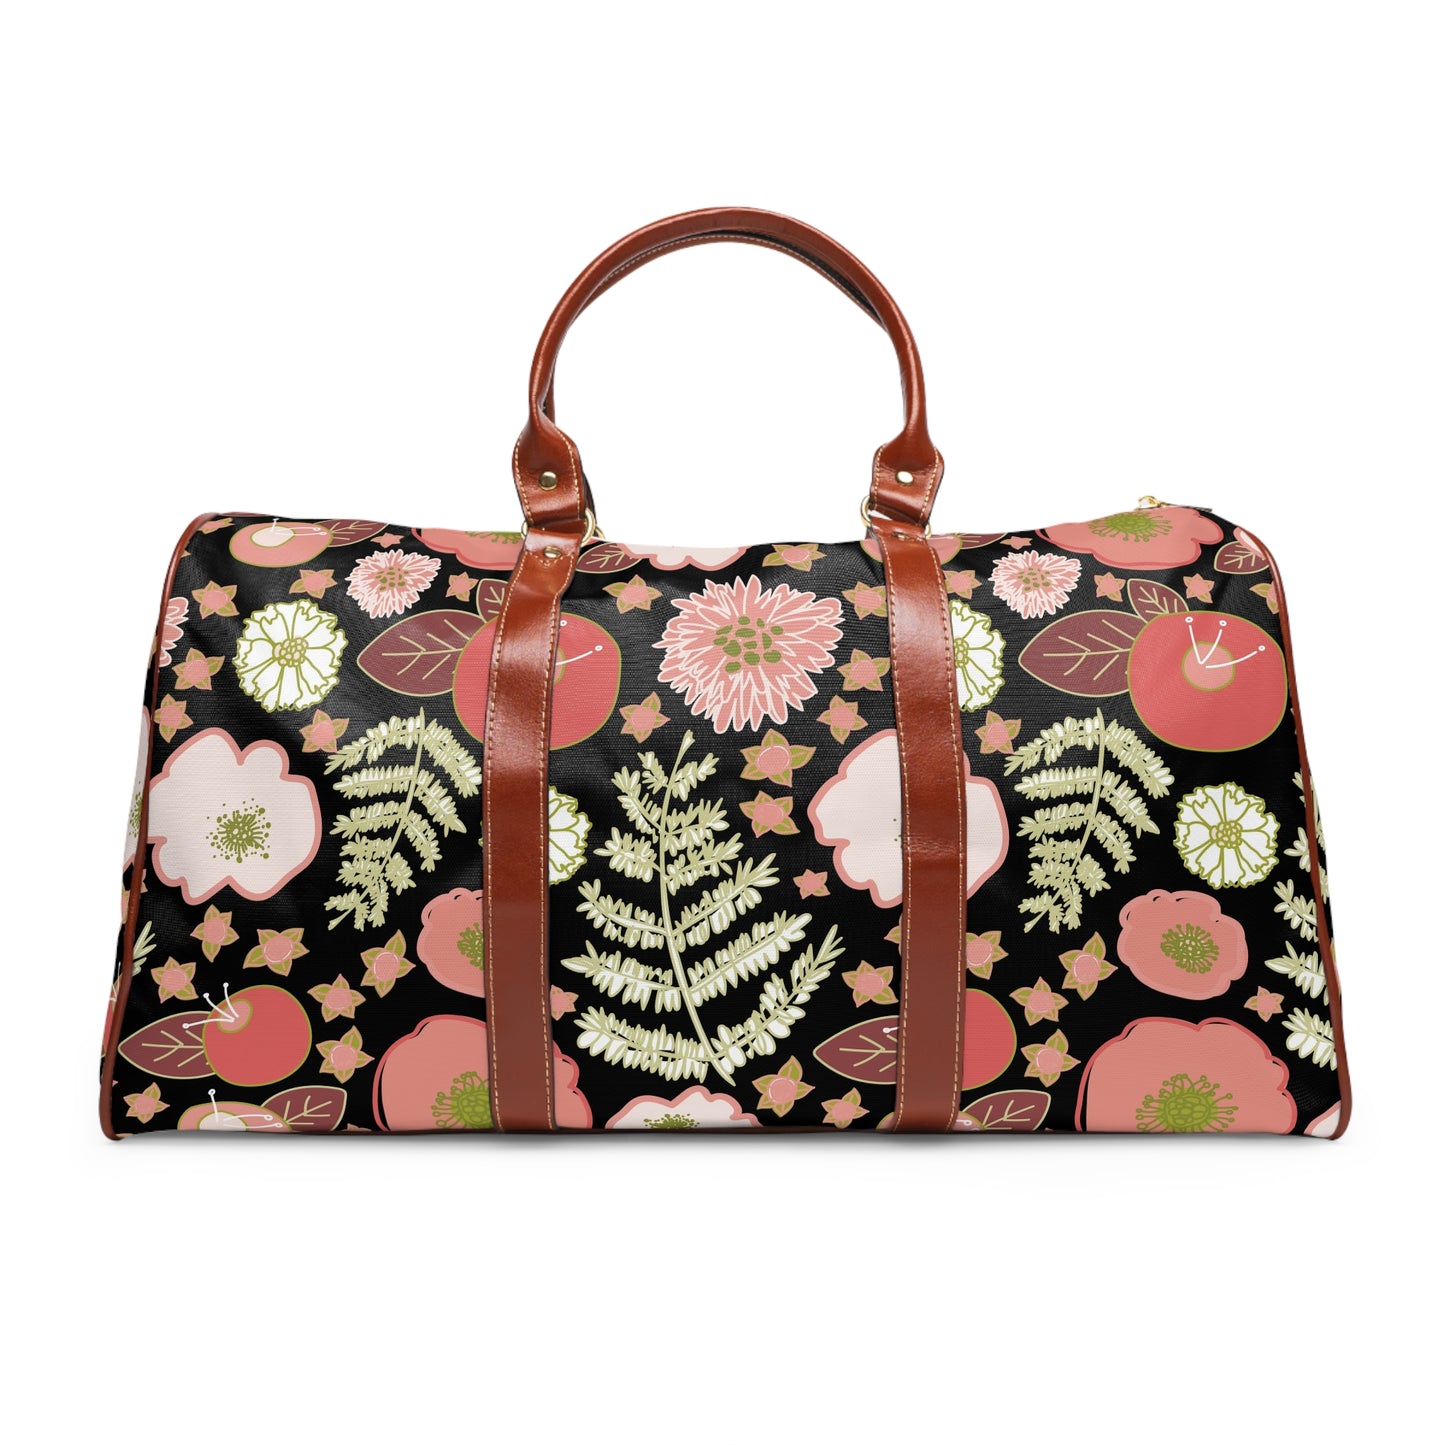 Coral Flowers on Black Waterproof Travel Bag